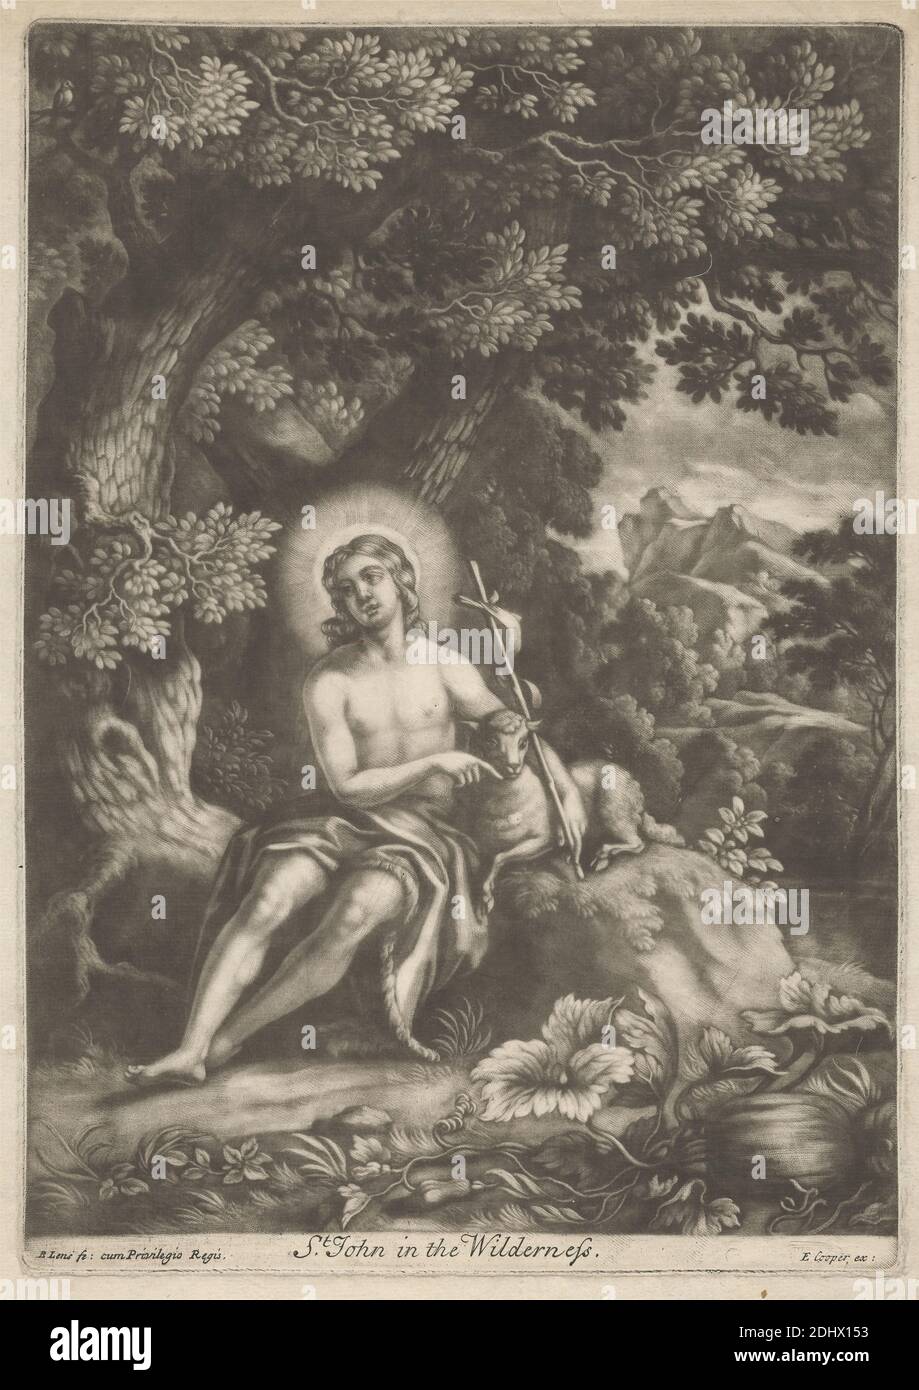 San Juan en la naturaleza, impresión hecha por Bernard Lens, 1659–1725, británico, sin fecha, Mezzotint en papel medio, moderadamente texturizado, crema, hoja: 12 3/16 × 8 9/16 pulgadas (31 × 21.7 cm), placa: 11 1/16 × 7 13/16 pulgadas (28.1 × 19.8 cm), e imagen: 10 3/4 × 7 3/4 pulgadas (27.3 × 19.7 cm), descalzo, cabello de camello, cruz (objeto), cruces (motivos), halos, Juan el Bautista; posibles atributos: Libro, cruz de caña, copa bautismal, panal de miel, cordero, personal - vida temprana del santo masculino, cordero, montaña, obediencia, profeta, caña, sujeto religioso y mitológico, sentado, árboles, vides, desierto Foto de stock